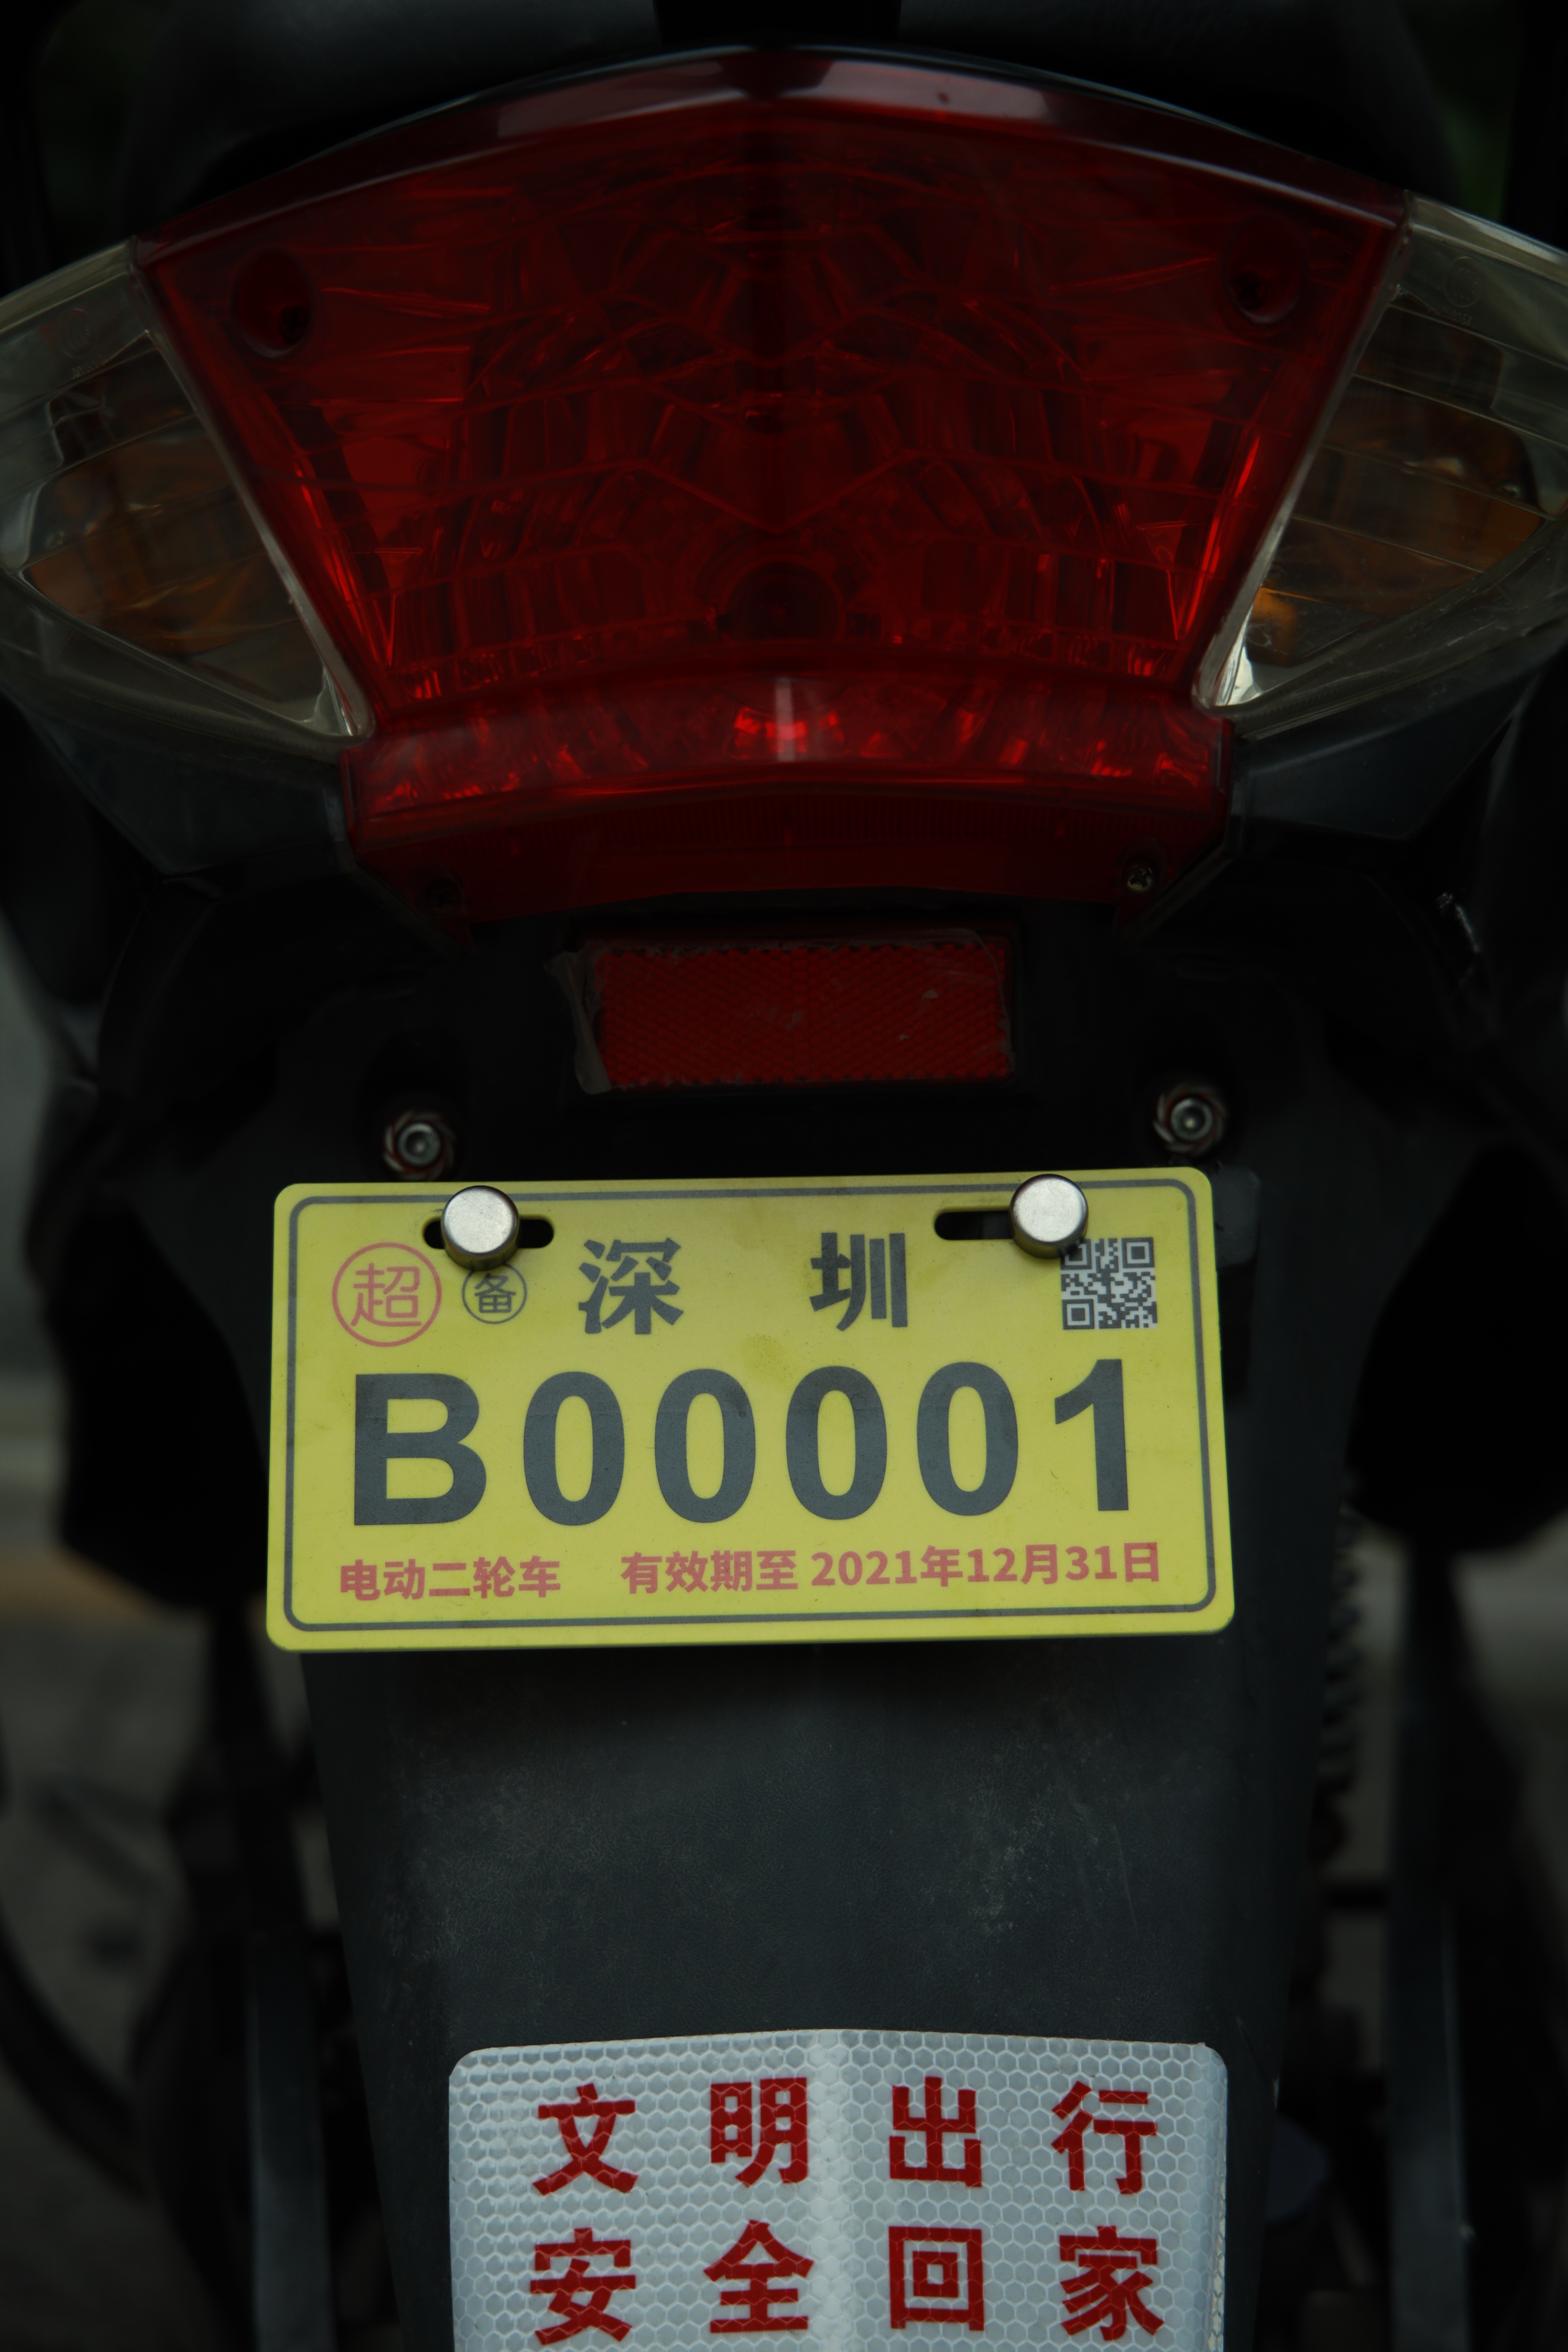 4月9日,市民获得电动二轮车备案标识号码为b00001的车牌